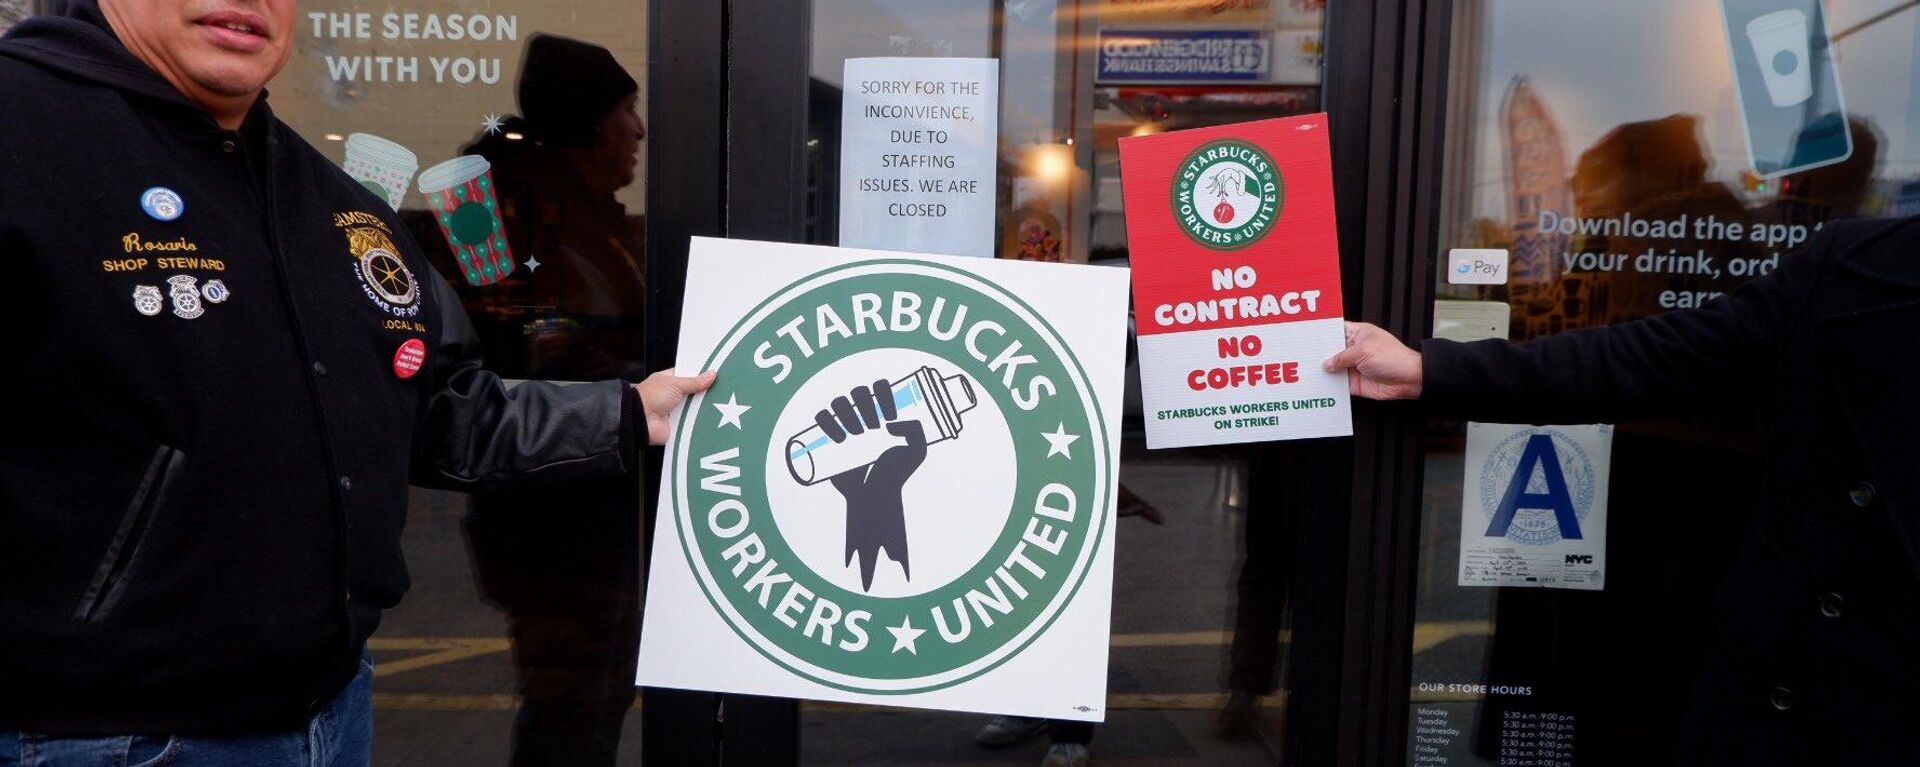 ABD'de Starbucks'ın Kırmızı Kupa gününde 100'den fazla mağazasında 2000'den fazla çalışan bir günlük grev yaptı. (17.11.2022) - Sputnik Türkiye, 1920, 17.11.2022